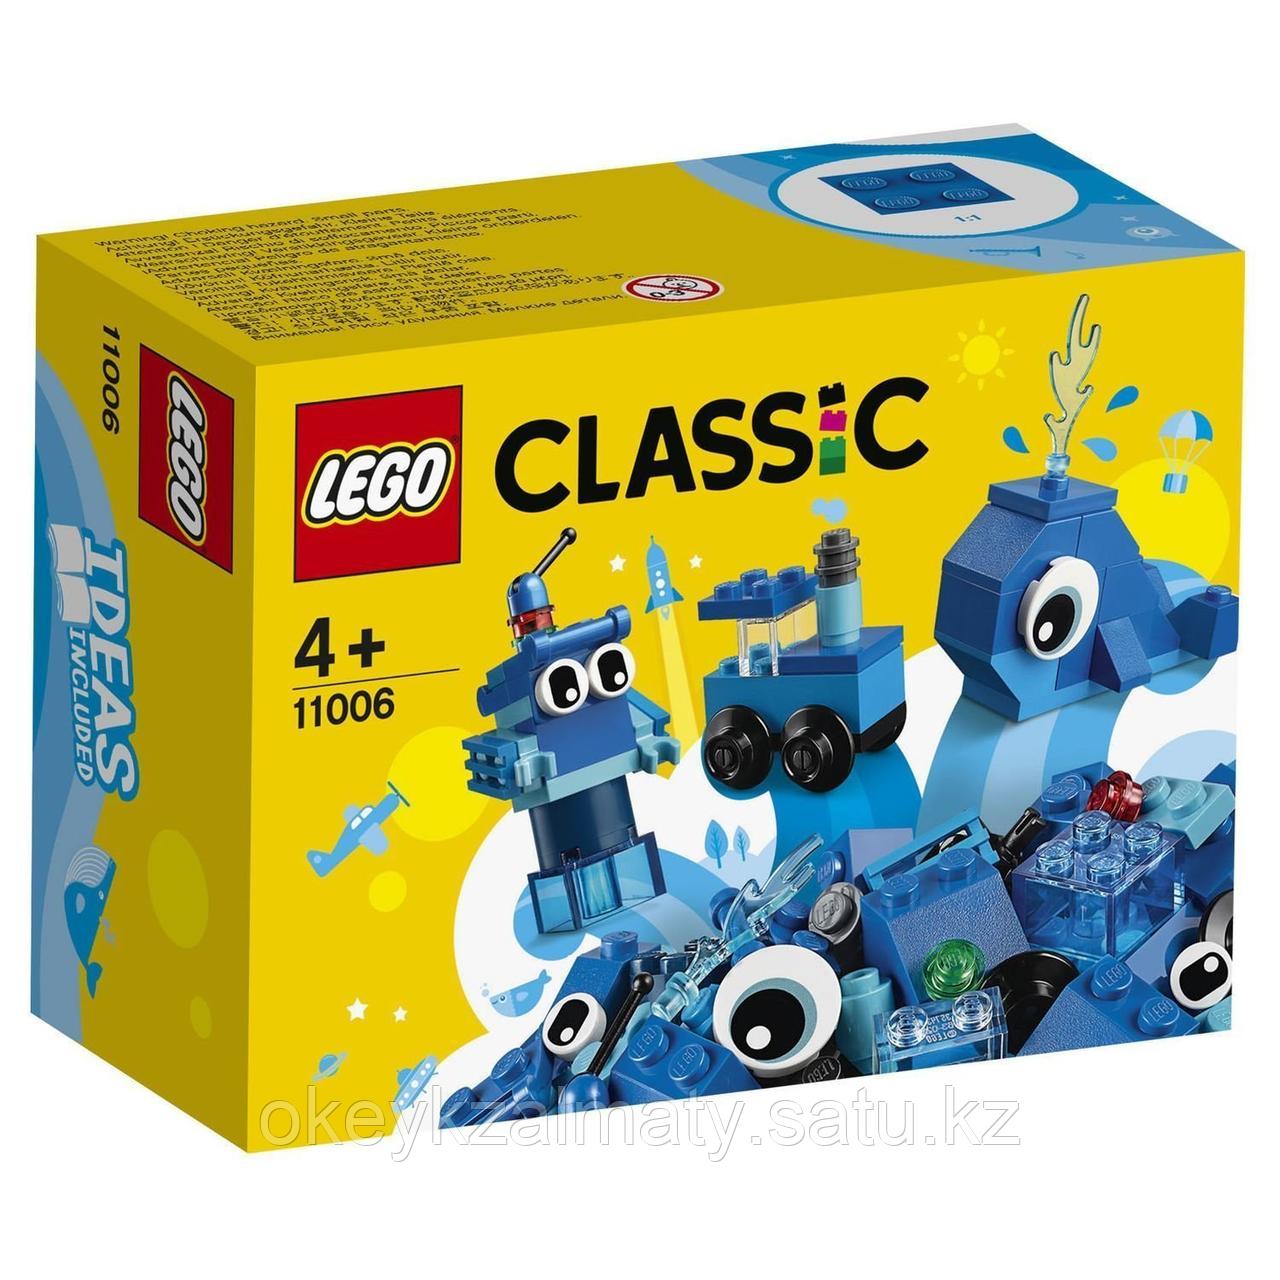 LEGO Classic: Синий набор для конструирования 11006